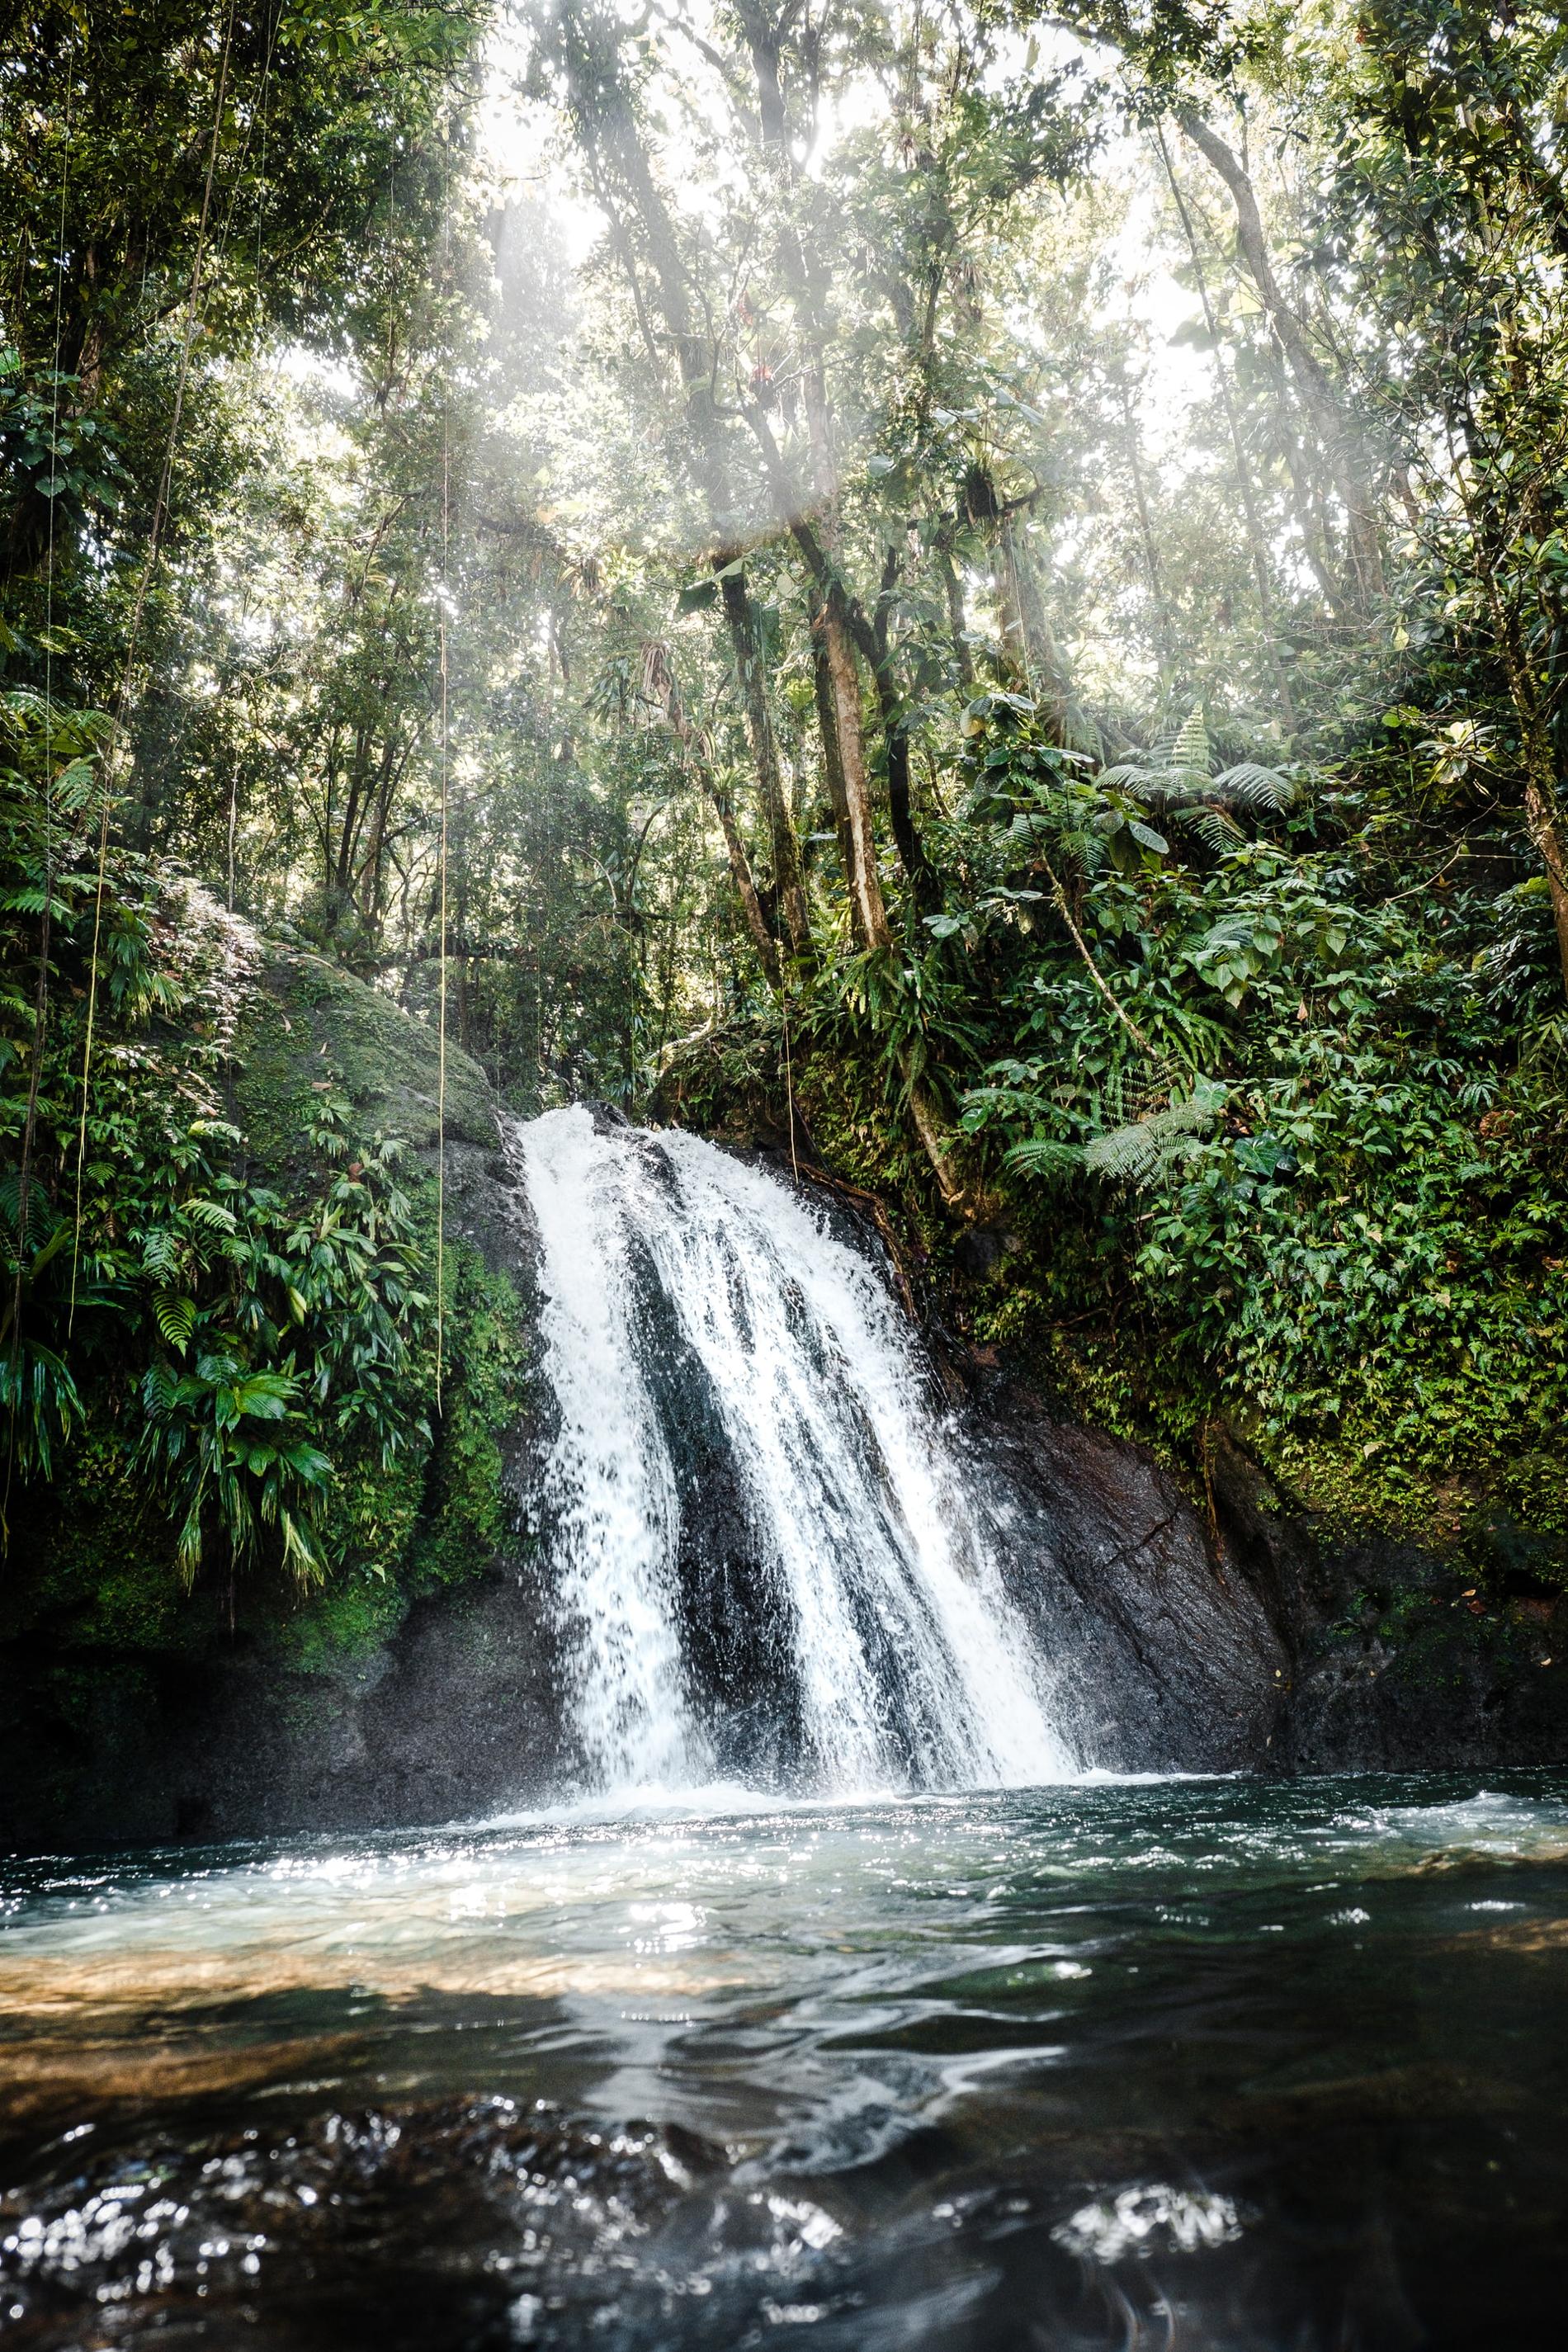 La cascade aux écrevisses dans la forêt humide de Guadeloupe © Daniel Öberg/Unsplash